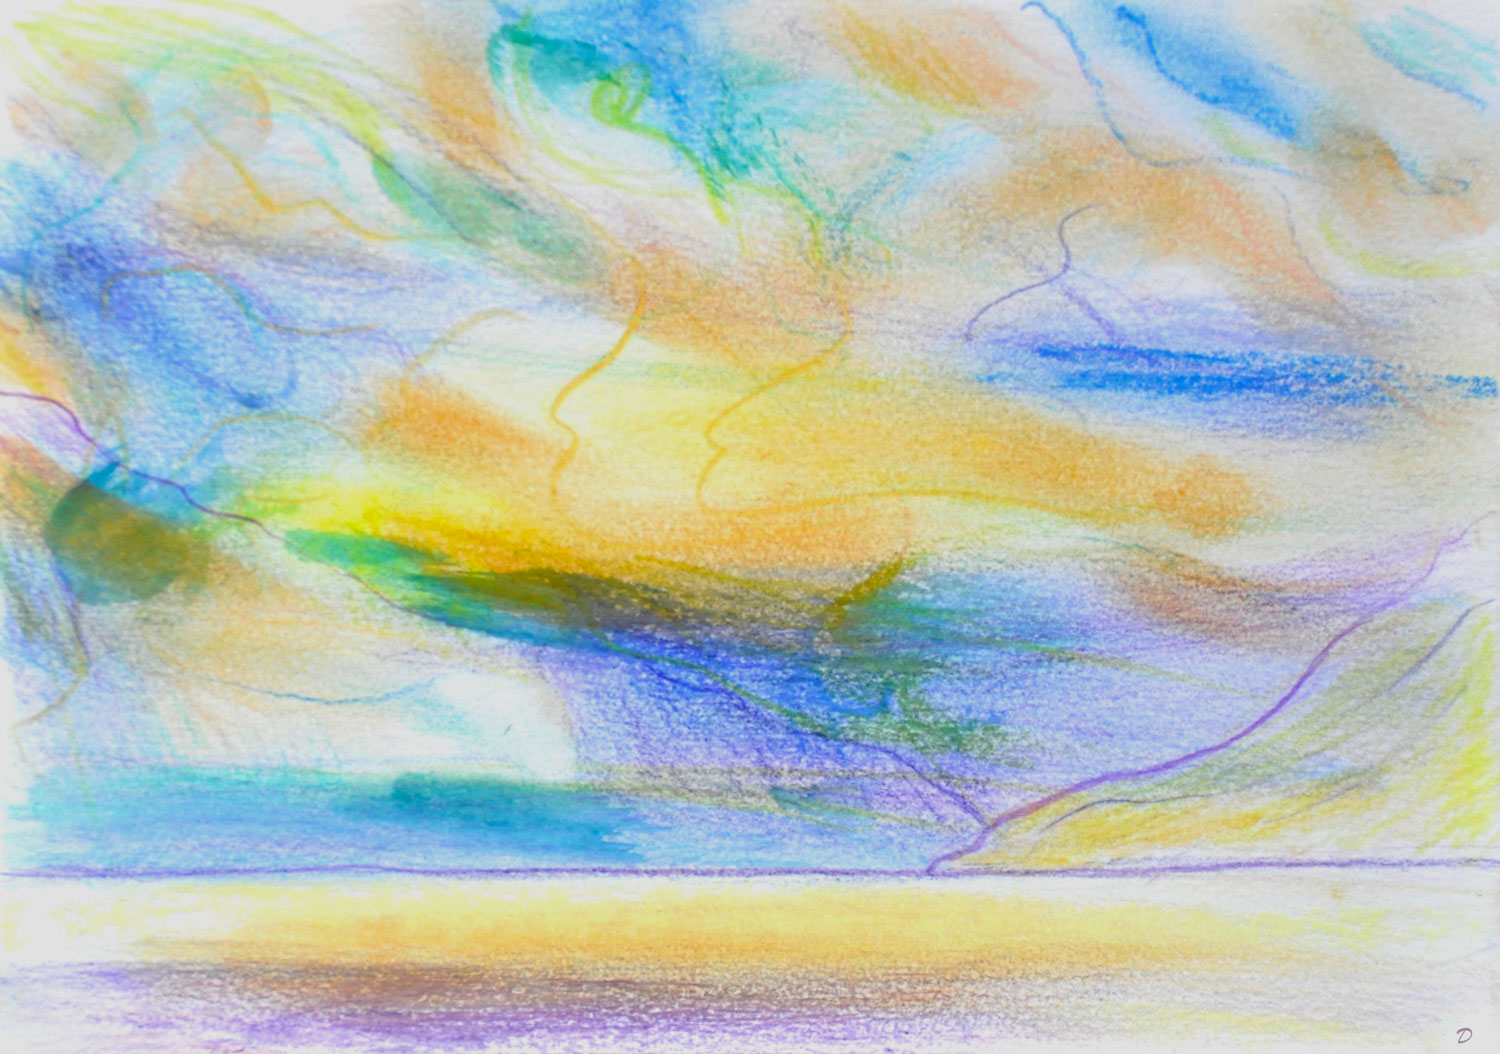 Etude de nuages, 10, St Prex. Crayon de couleur, pastel tendre et huile sur papier, 15x21, 2022